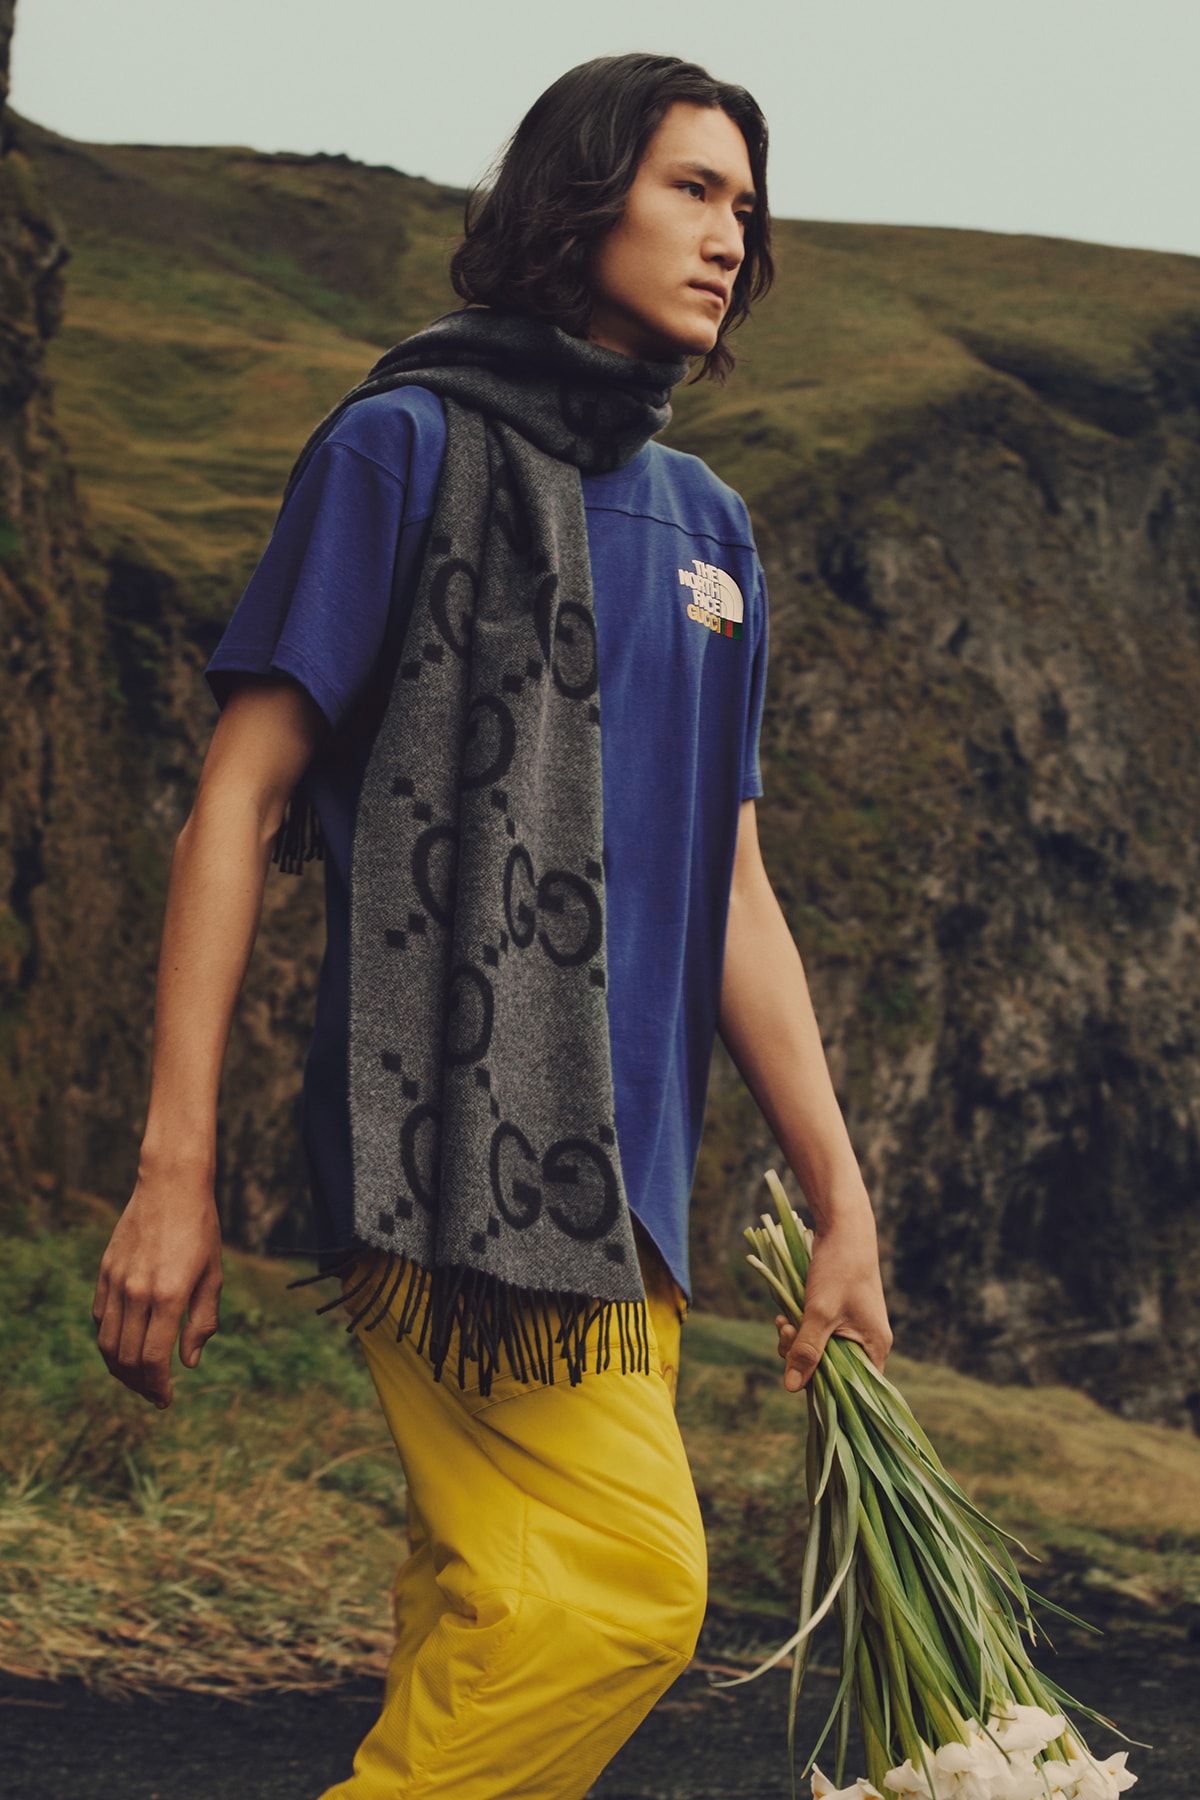 ザ・ノース・フェイスx グッチによるコラボコレクション第2弾のキャンペーンビジュアルが公開 Gucci and The North Face Present “Chapter 2” of its Iconic Collaboration Part Two Collection Design 